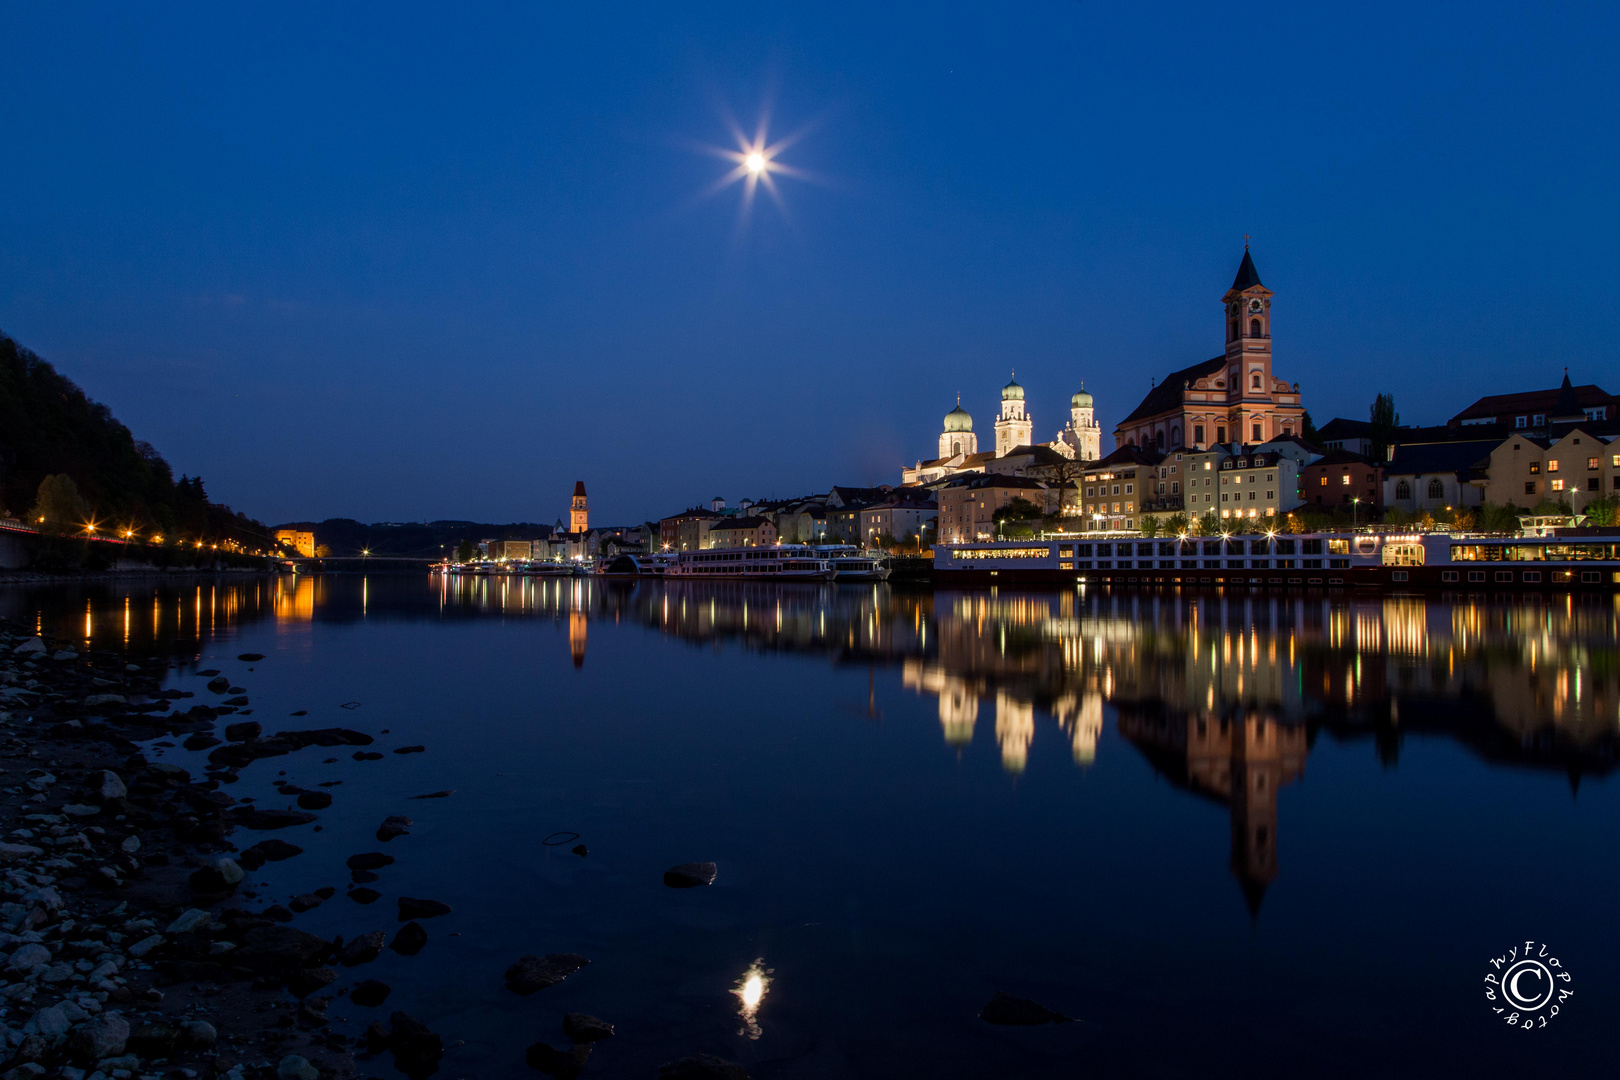 Moon over Passau